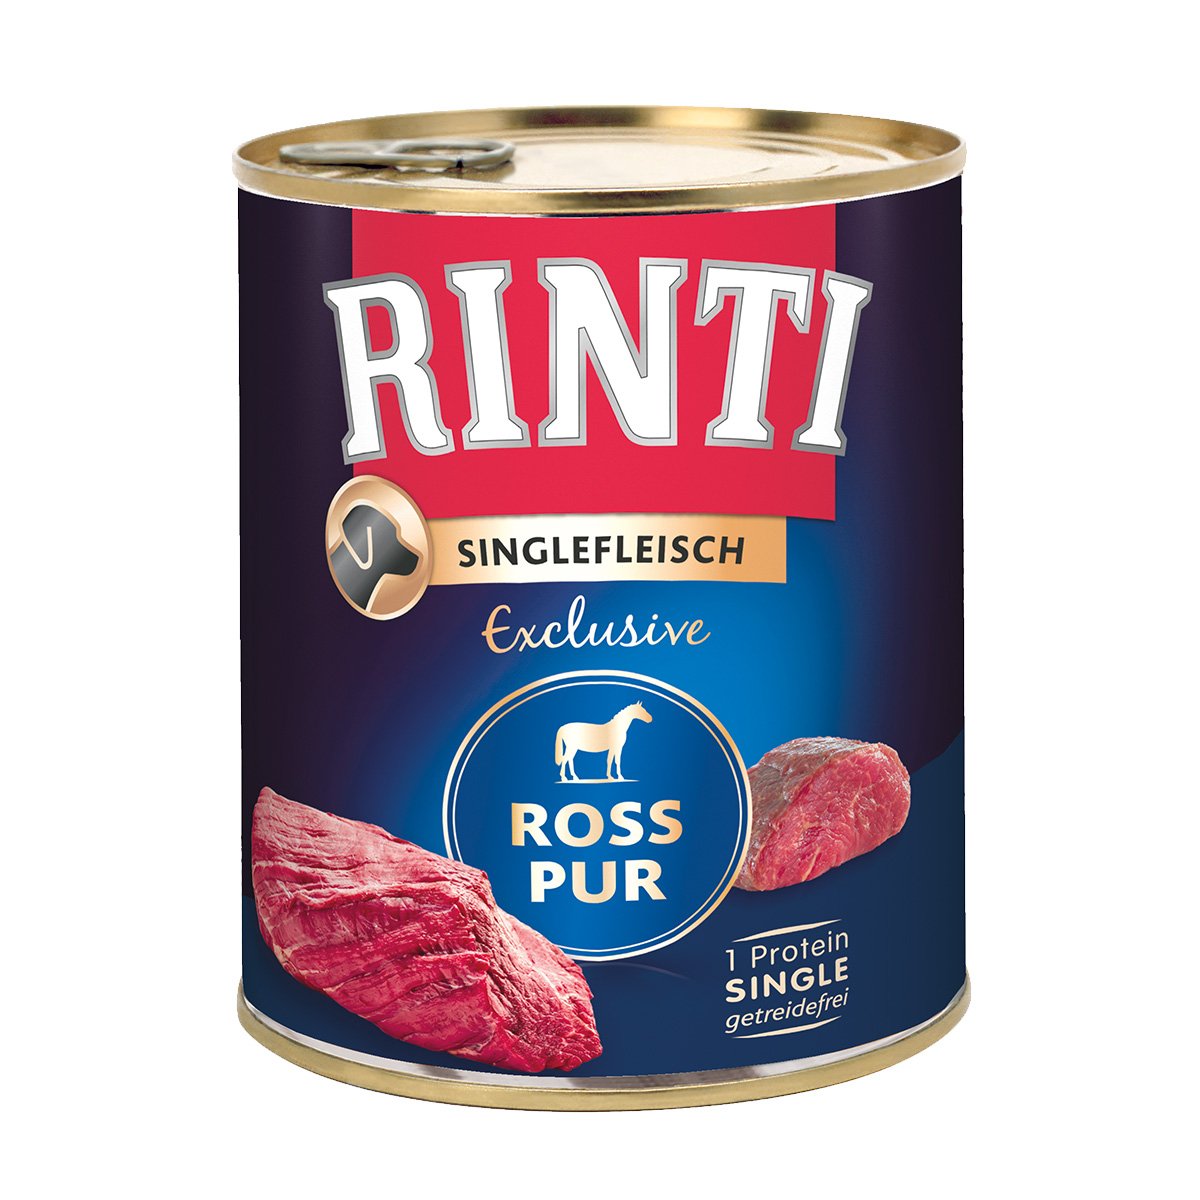 Rinti Singlefleisch Ross pur 6x800g von Rinti